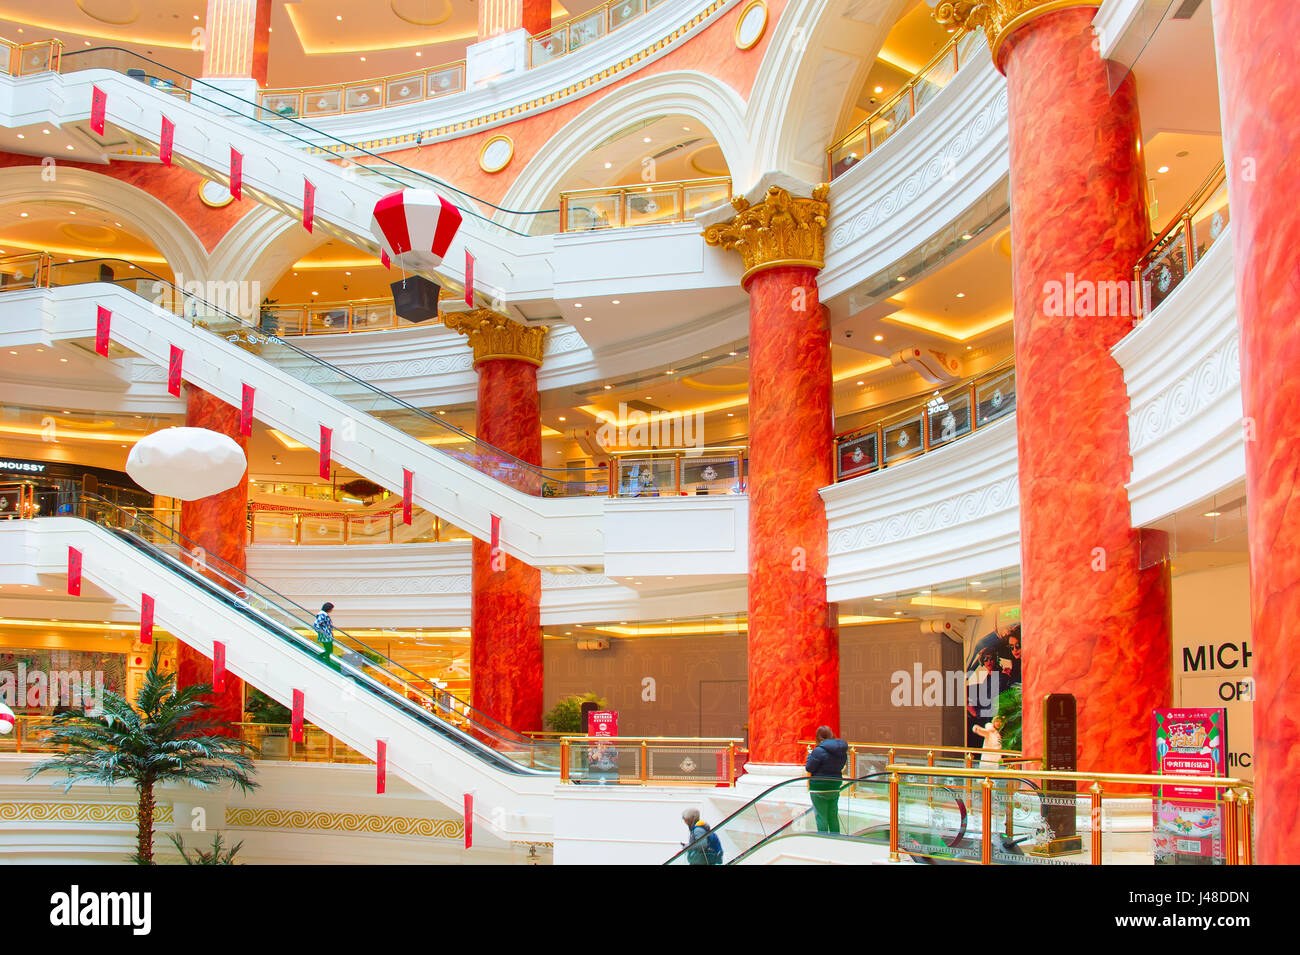 SHANGHAI, CHINA - 28. Dezember 2016: Globale Hafen ist ein großes Einkaufszentrum in Shanghai, China. Es hat eine Grundfläche von 480.000 Quadratmetern. Stockfoto